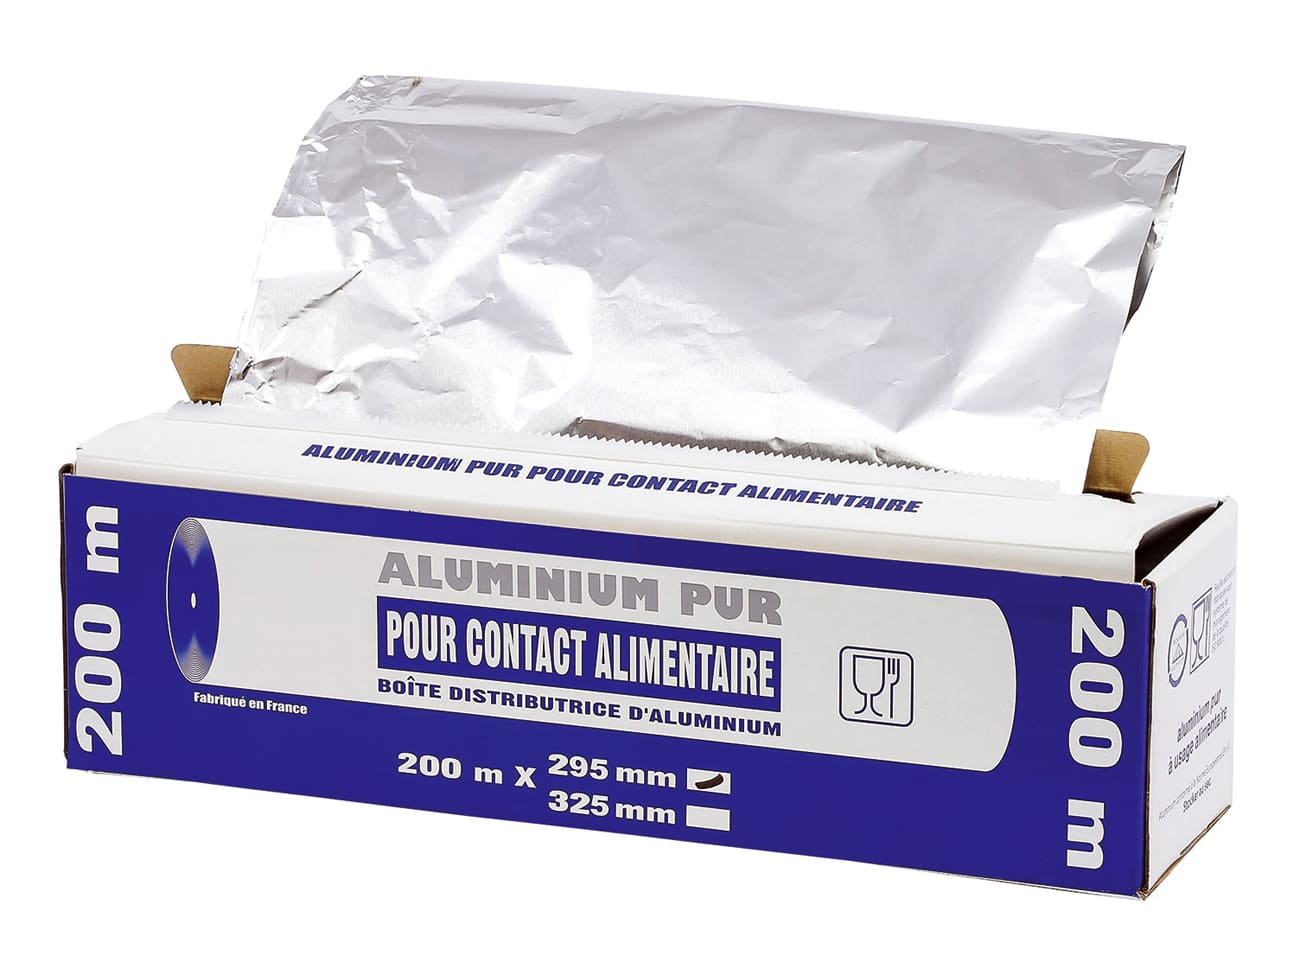 Papier aluminium alimentaire en boite distributrice - 30 cm x 200